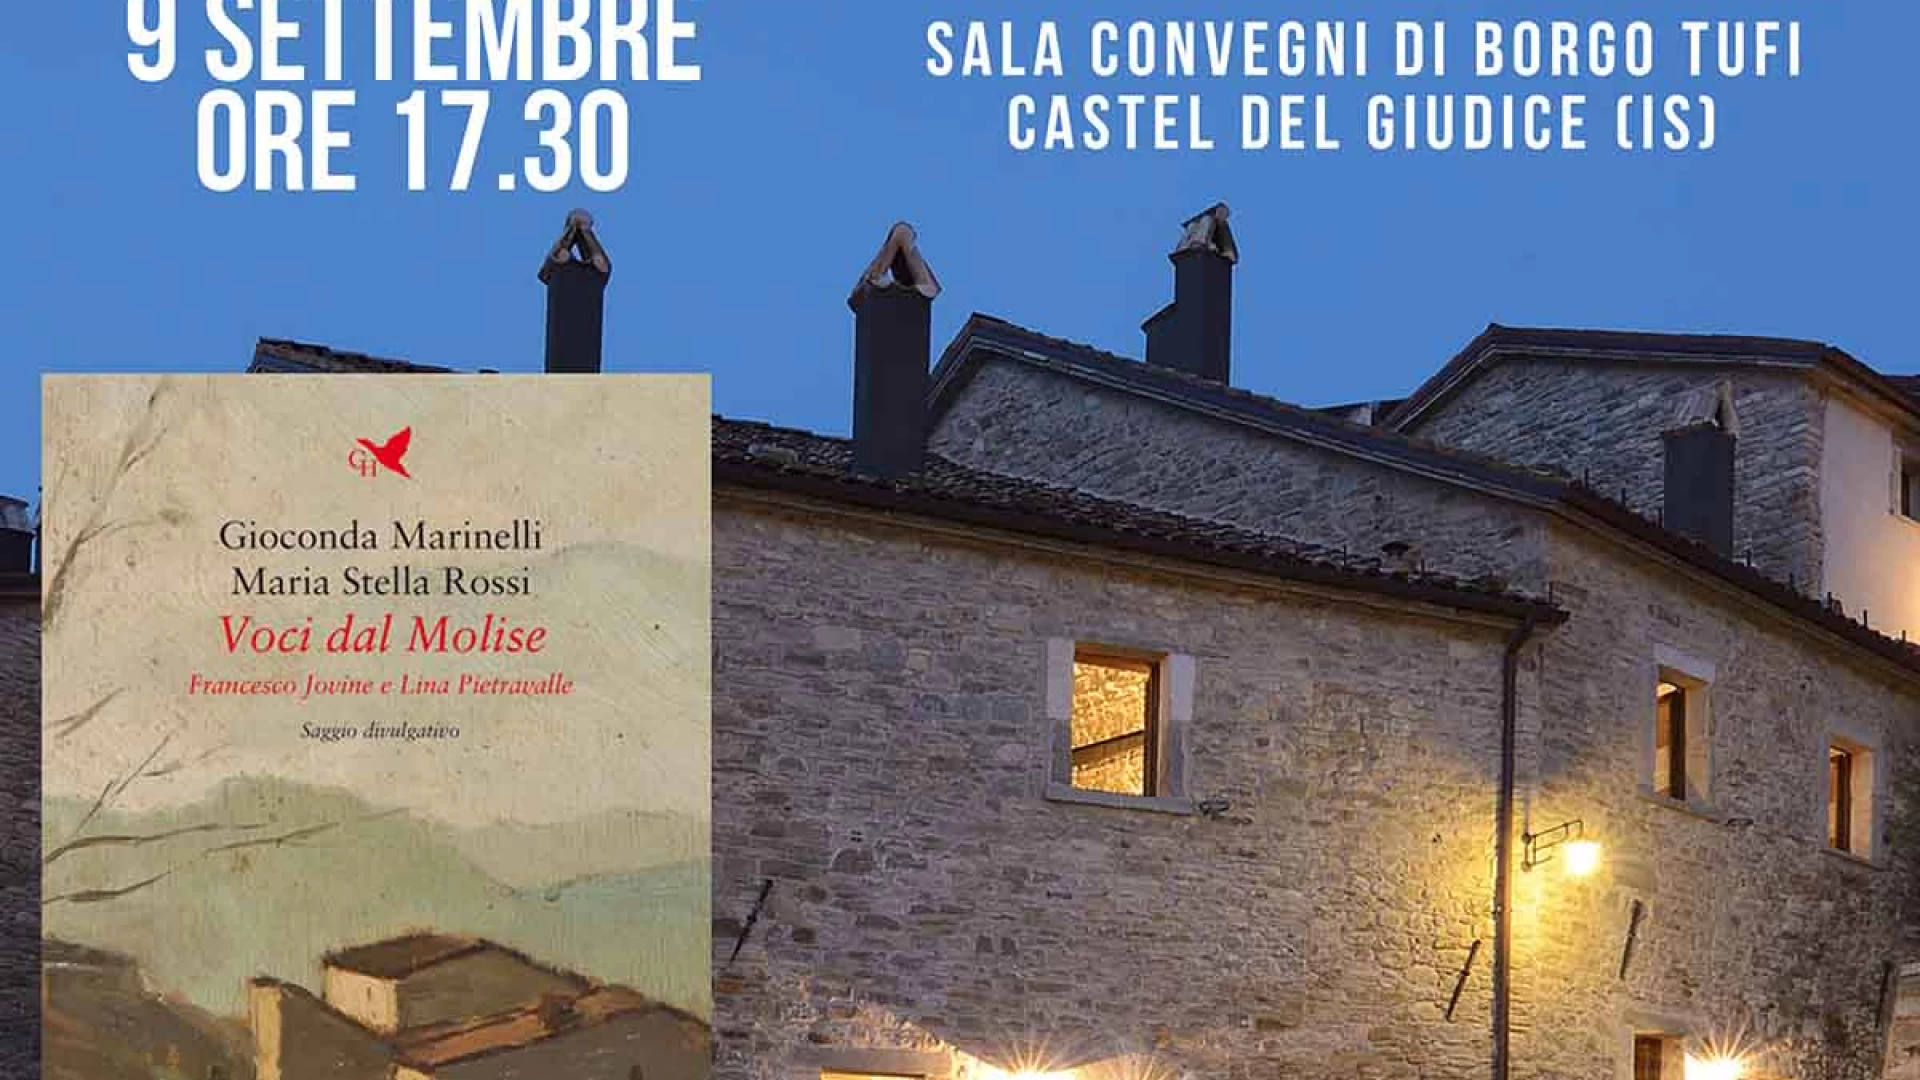 A Borgotufi la presentazione del volume "Voci dal Molise" di Gioconda Marinelli e Maria Stella Rossi